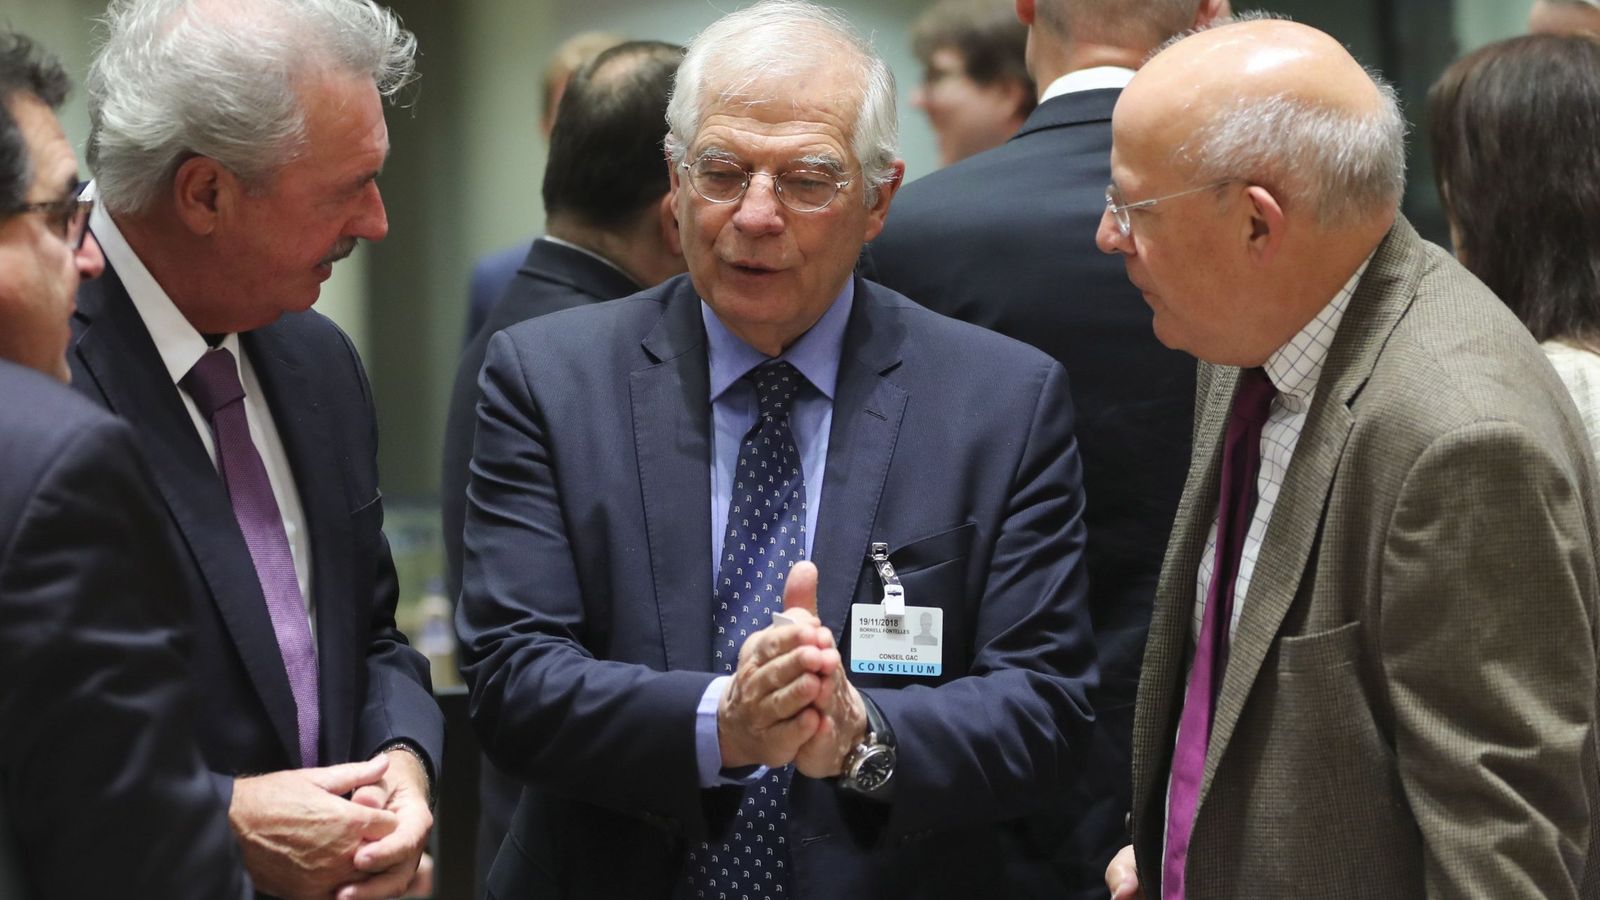 Foto: El ministro español de Asuntos Exteriores, Josep Borrell (c), conversa con sus homólogos luxemburgués, Jean Asselborn, en Bruselas. (EFE)